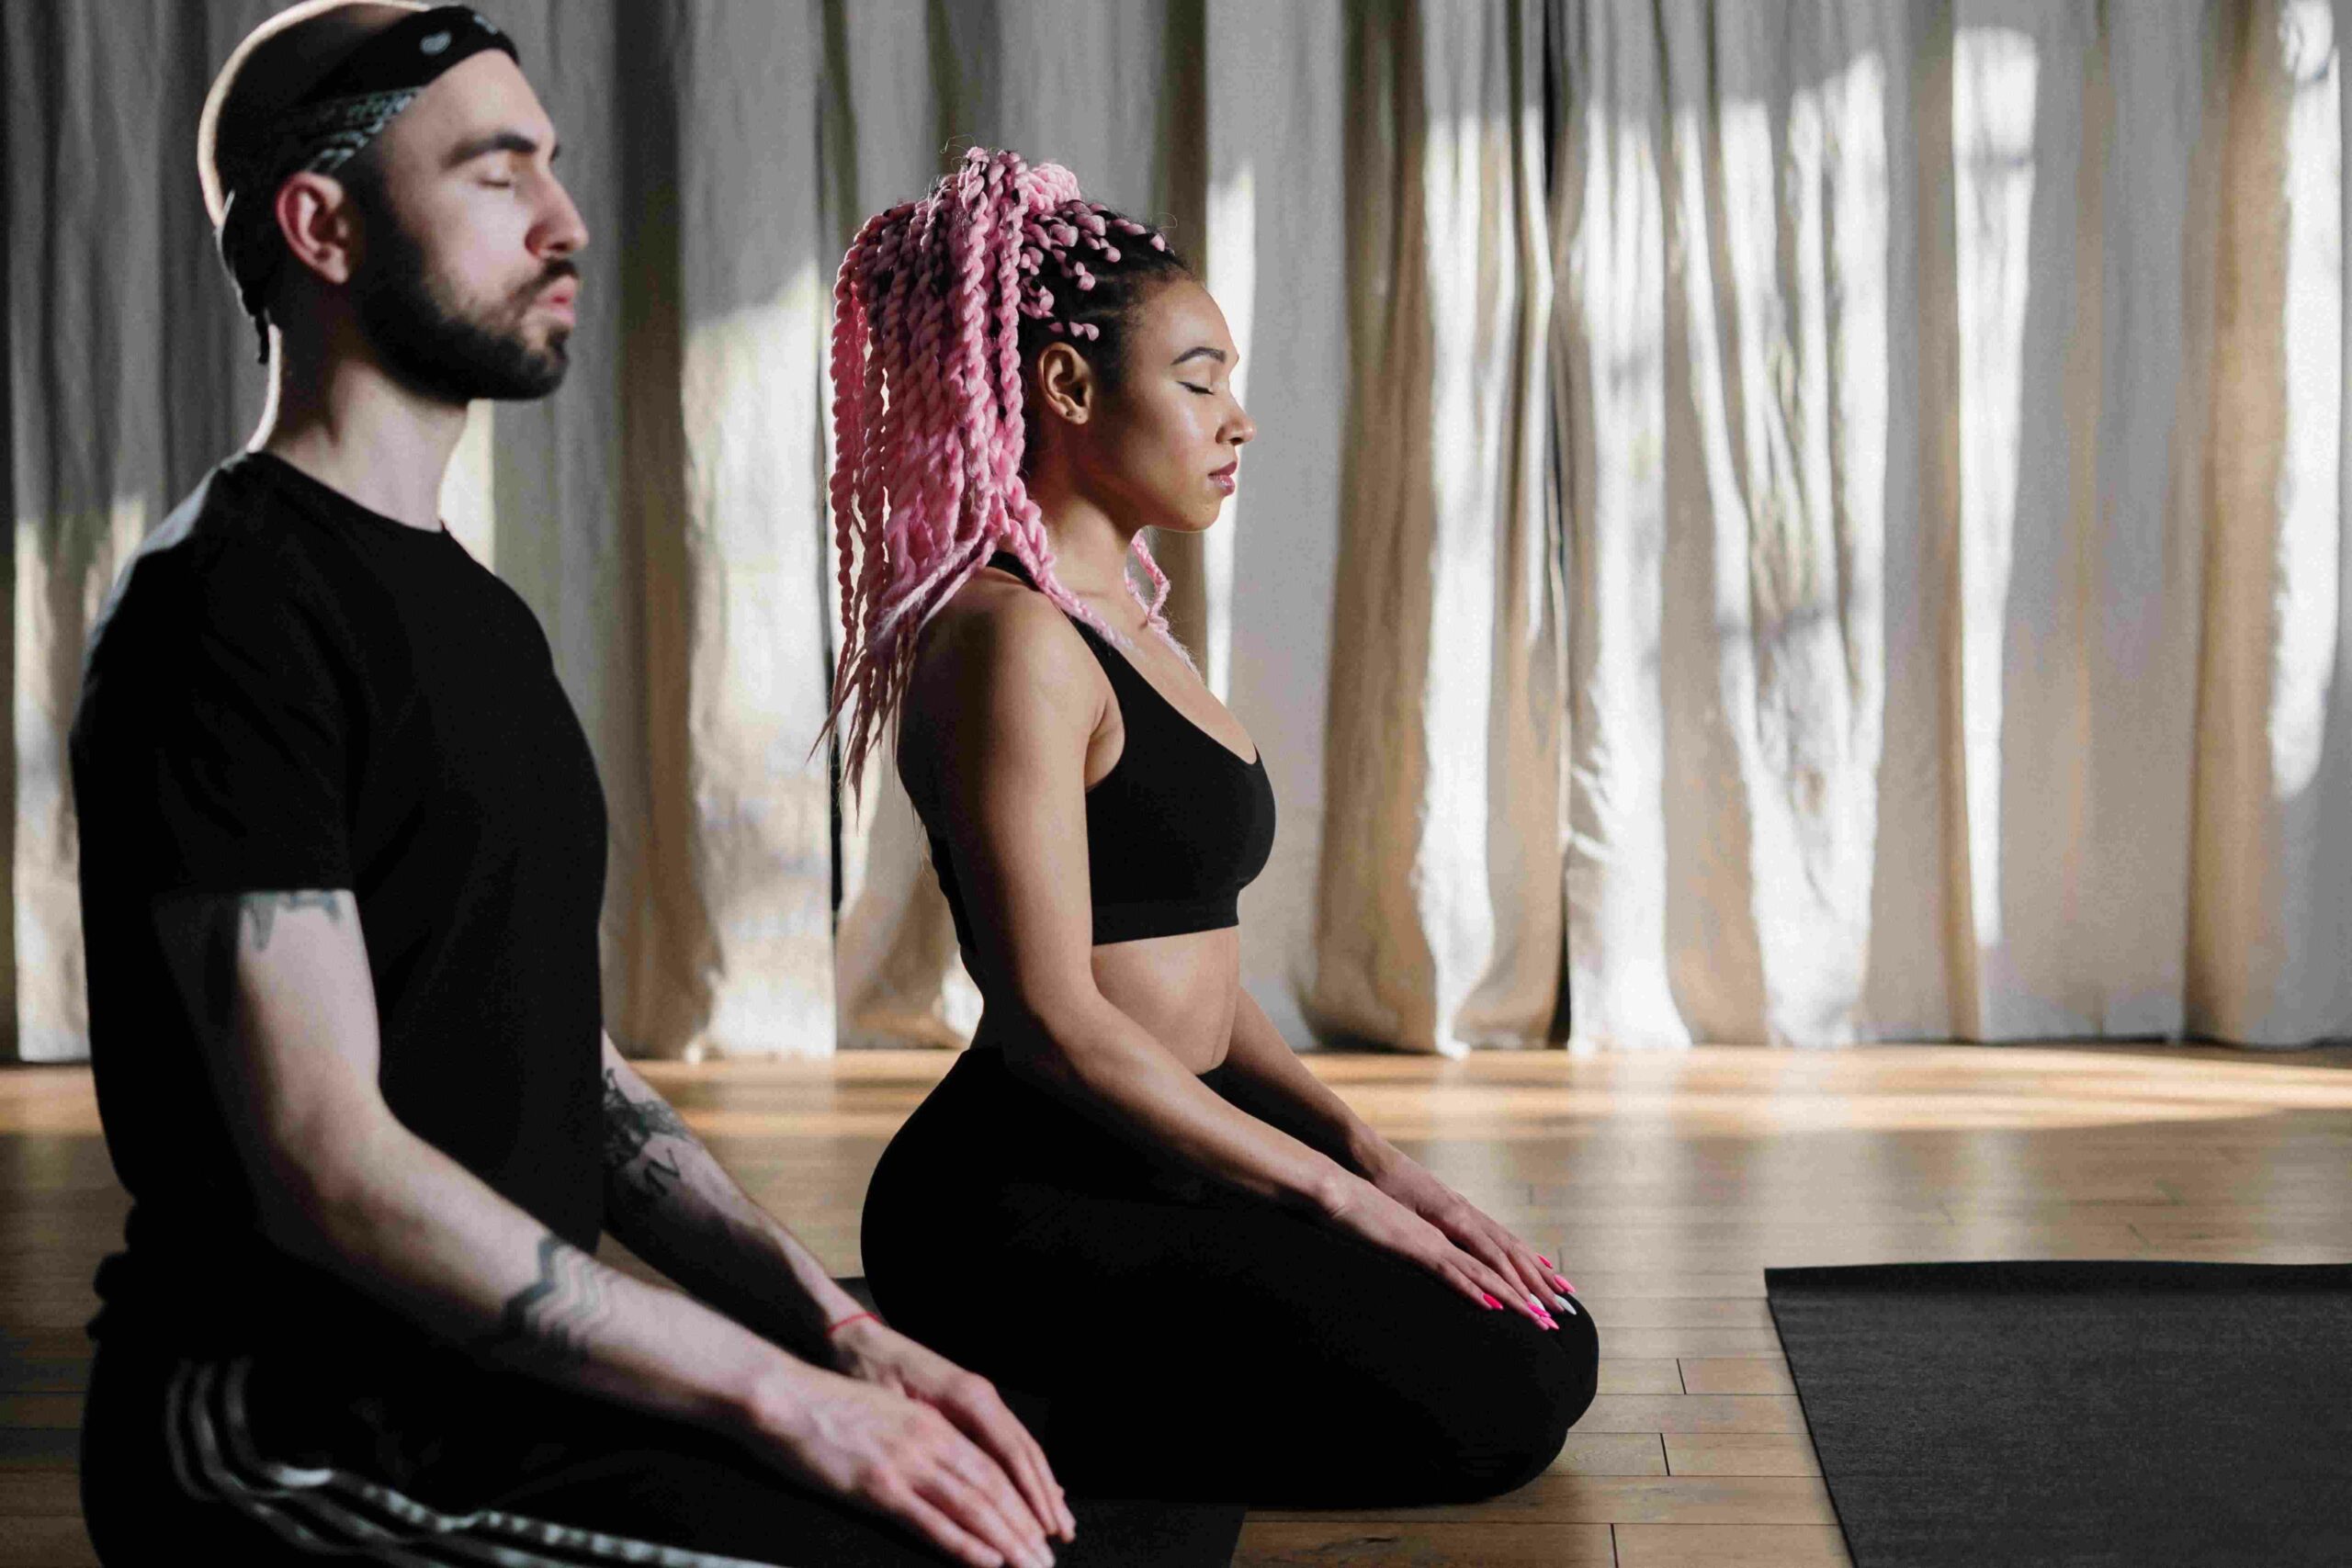 Yoga challenge poses, Partner yoga, Couples yoga poses